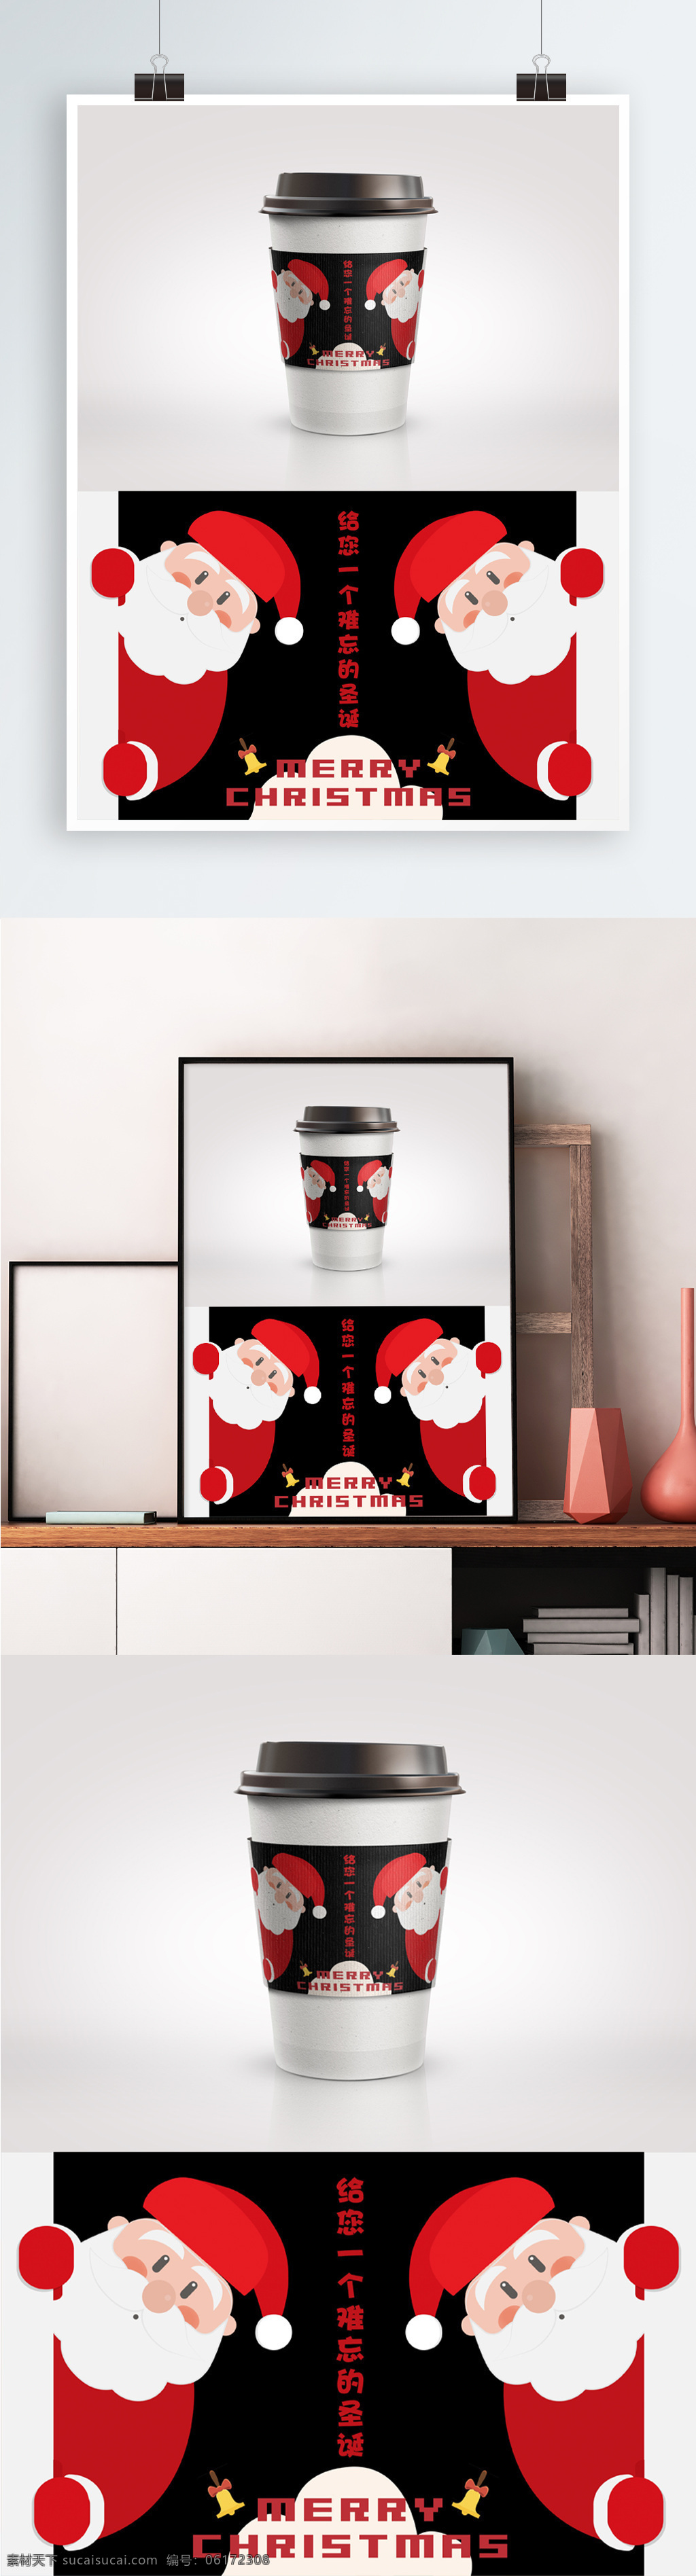 圣诞老人 可爱 咖啡 杯杯 套 杯套 扶墙 黑色 简约 咖啡杯 圣诞节